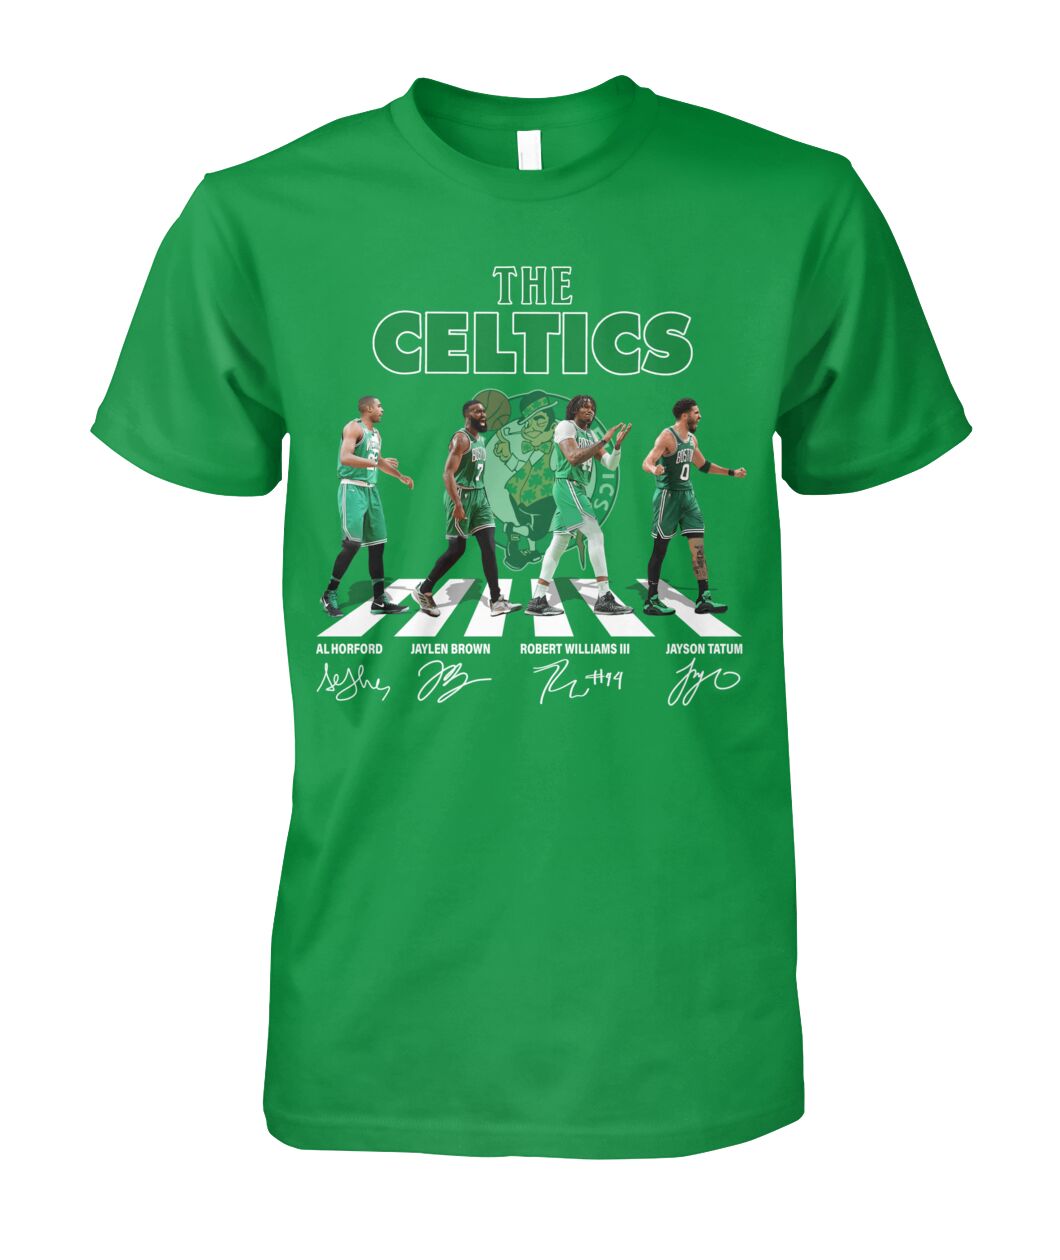 Unisex Black Boston Celtics 2023 NBA Playoffs Mantra Hoodie - BTF Store